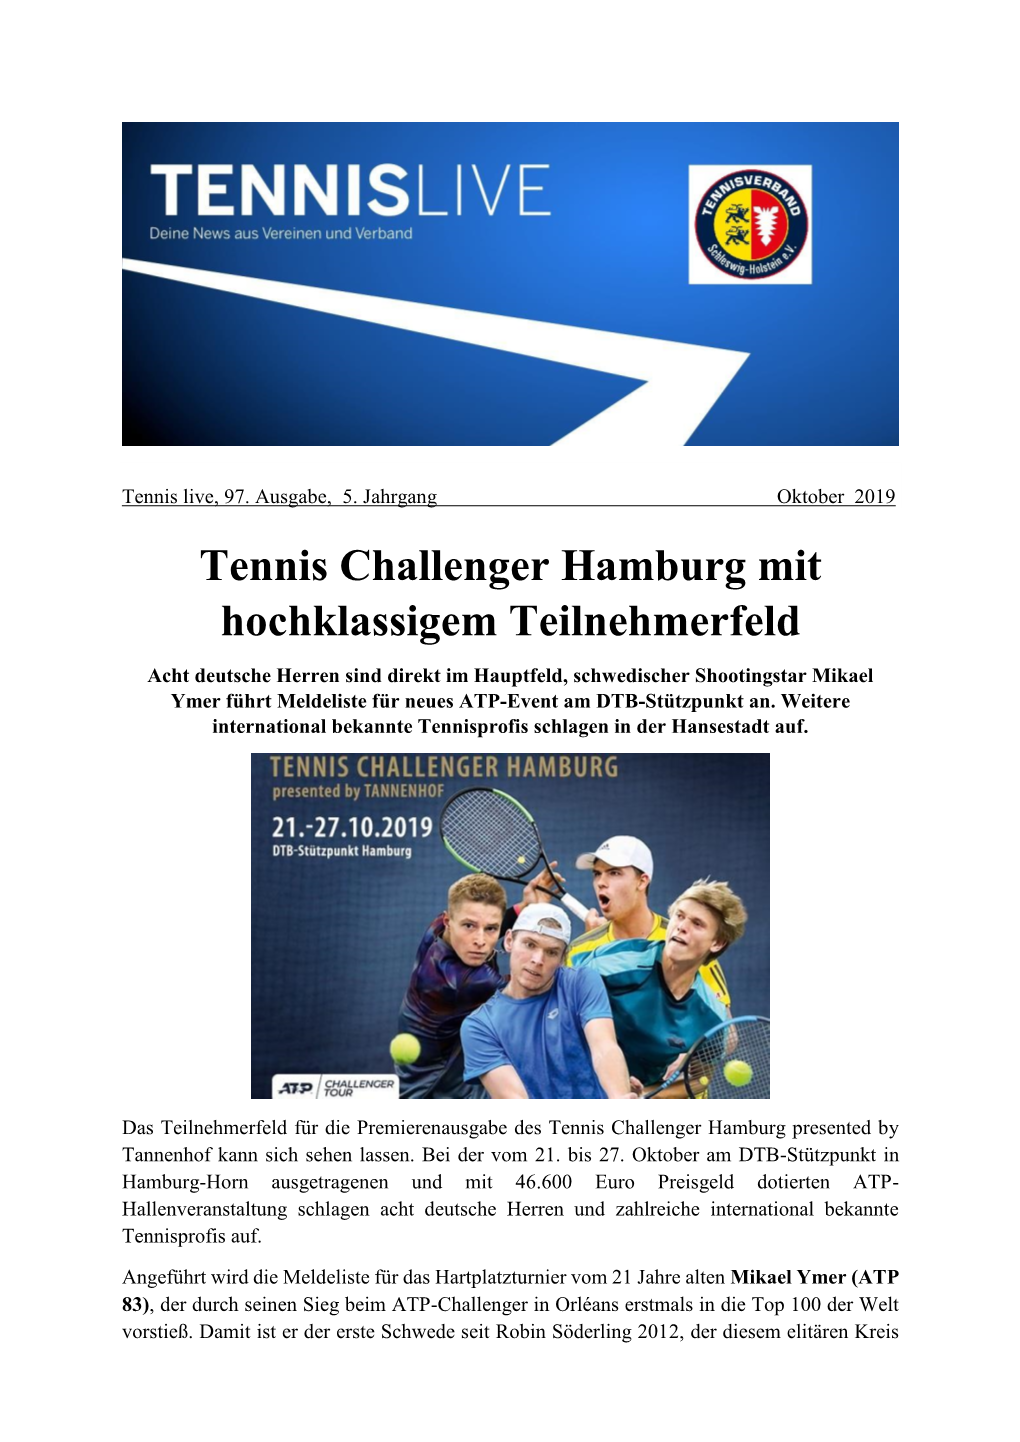 Tennis Challenger Hamburg Mit Hochklassigem Teilnehmerfeld